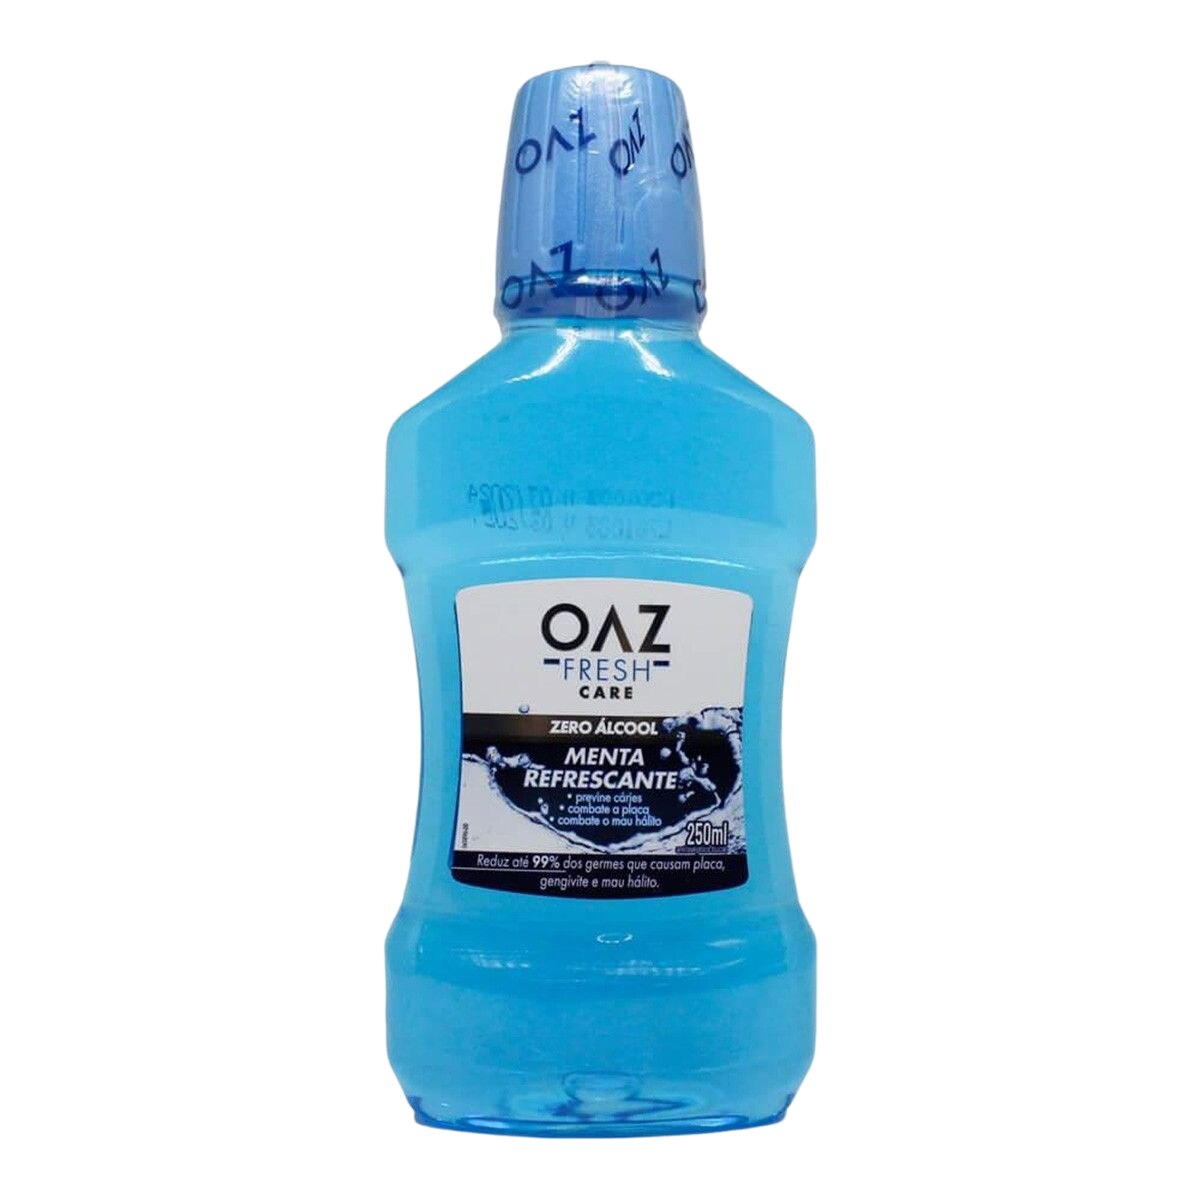 Enxaguante Bucal OAZ Fresh Care Menta Refrescante Zero Alcool 250ml